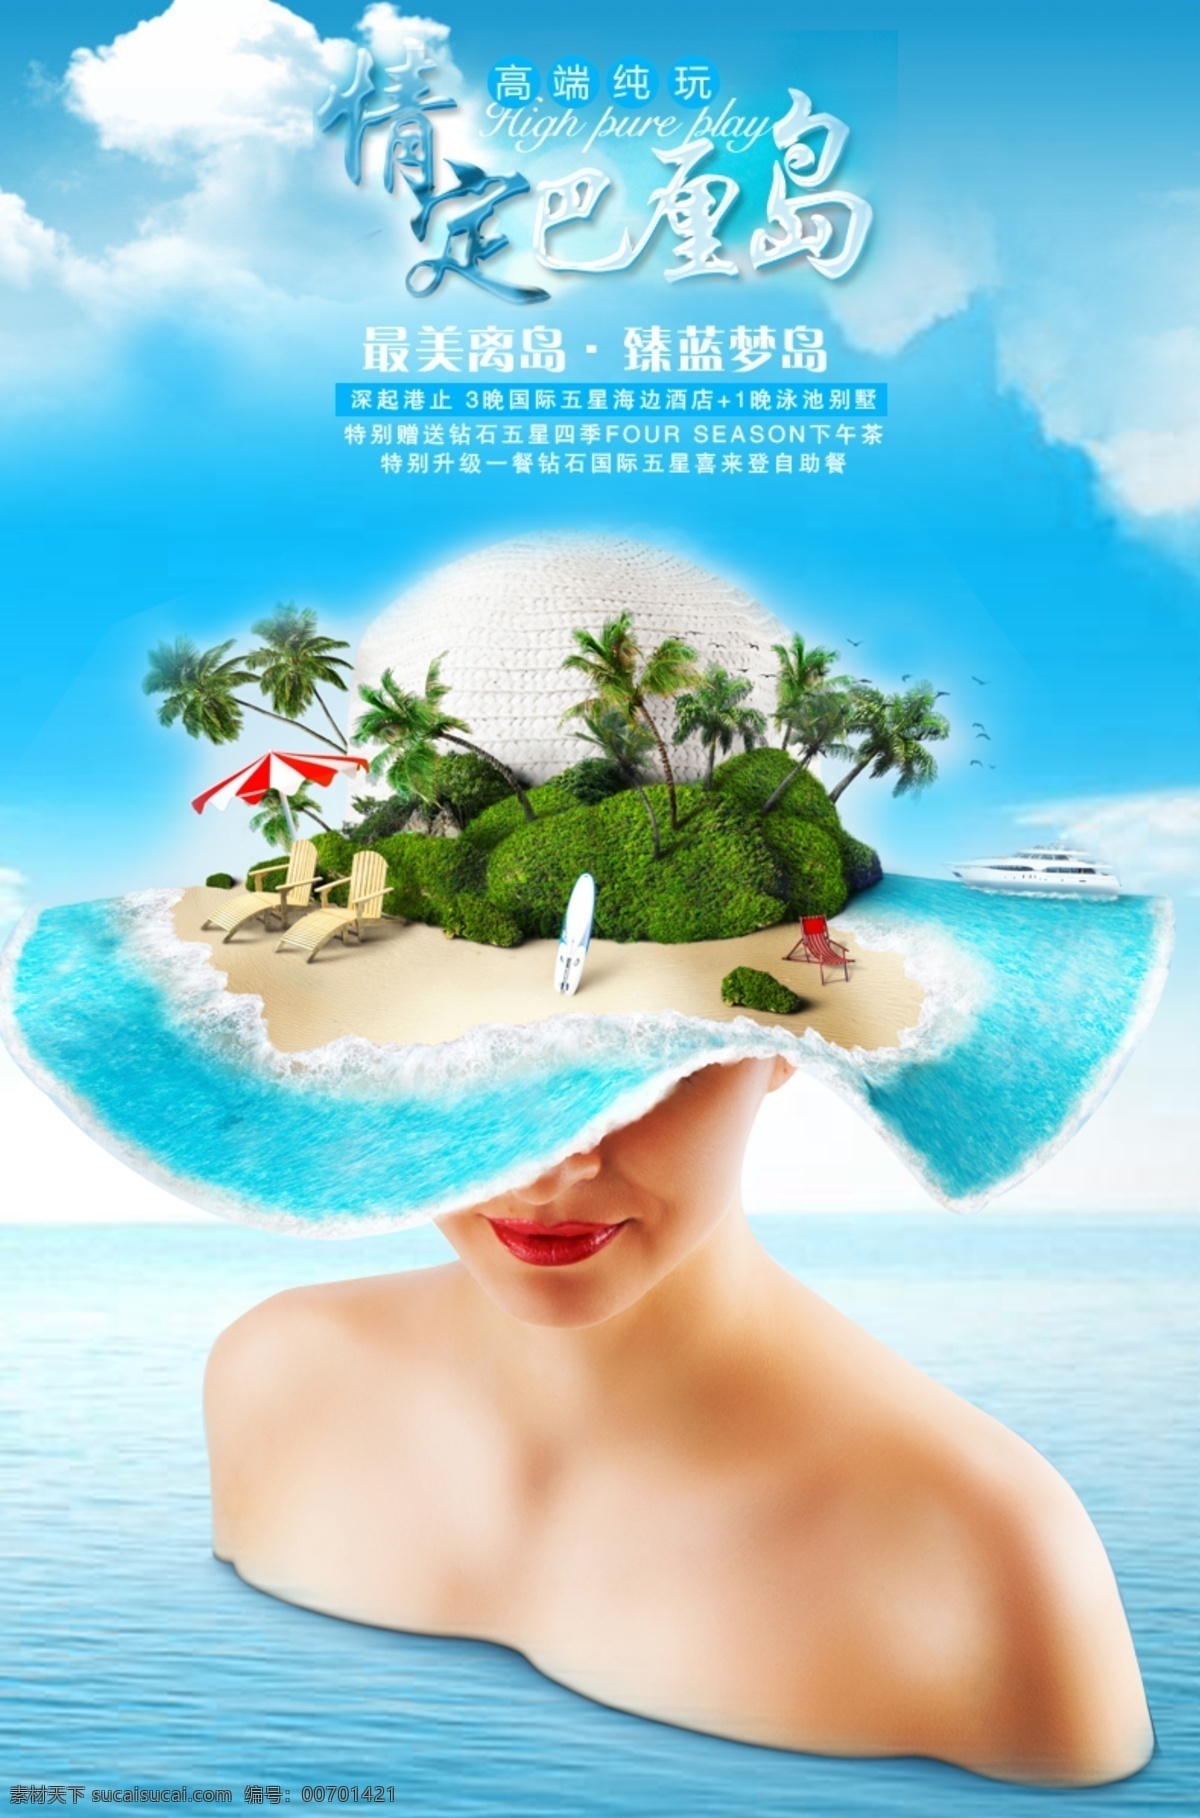 巴厘岛旅游 海岛旅游 蓝 梦 岛 旅游 幽 轩 广告 图 海报 海岛 宣传 青色 天蓝色